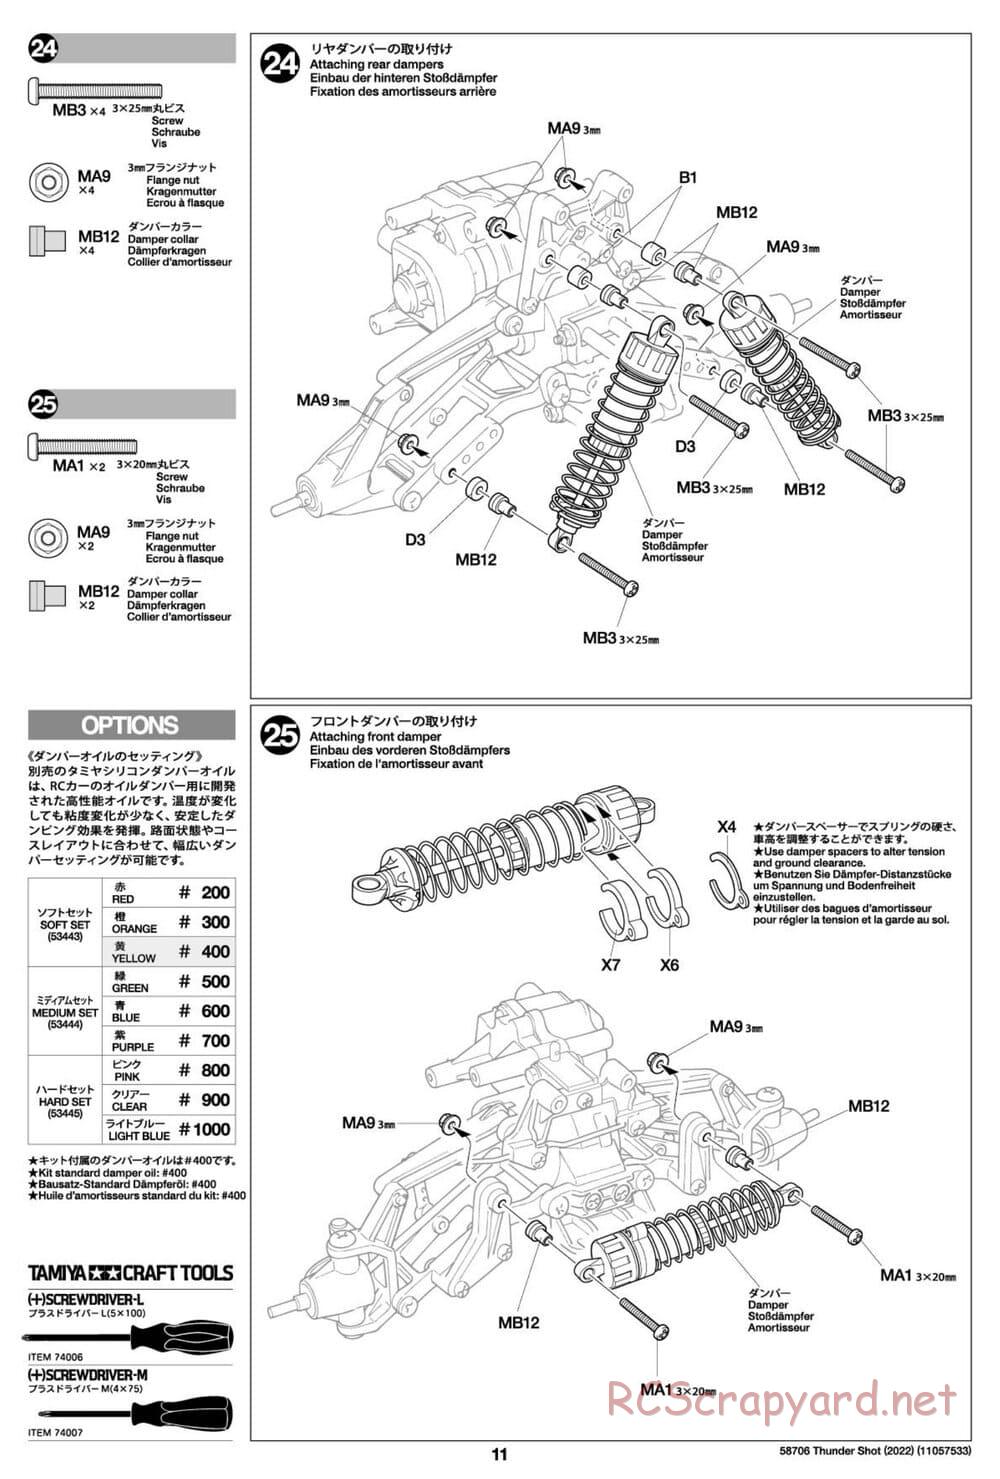 Tamiya - Thunder Shot (2022) - TS1/TS2 Chassis - Manual - Page 11